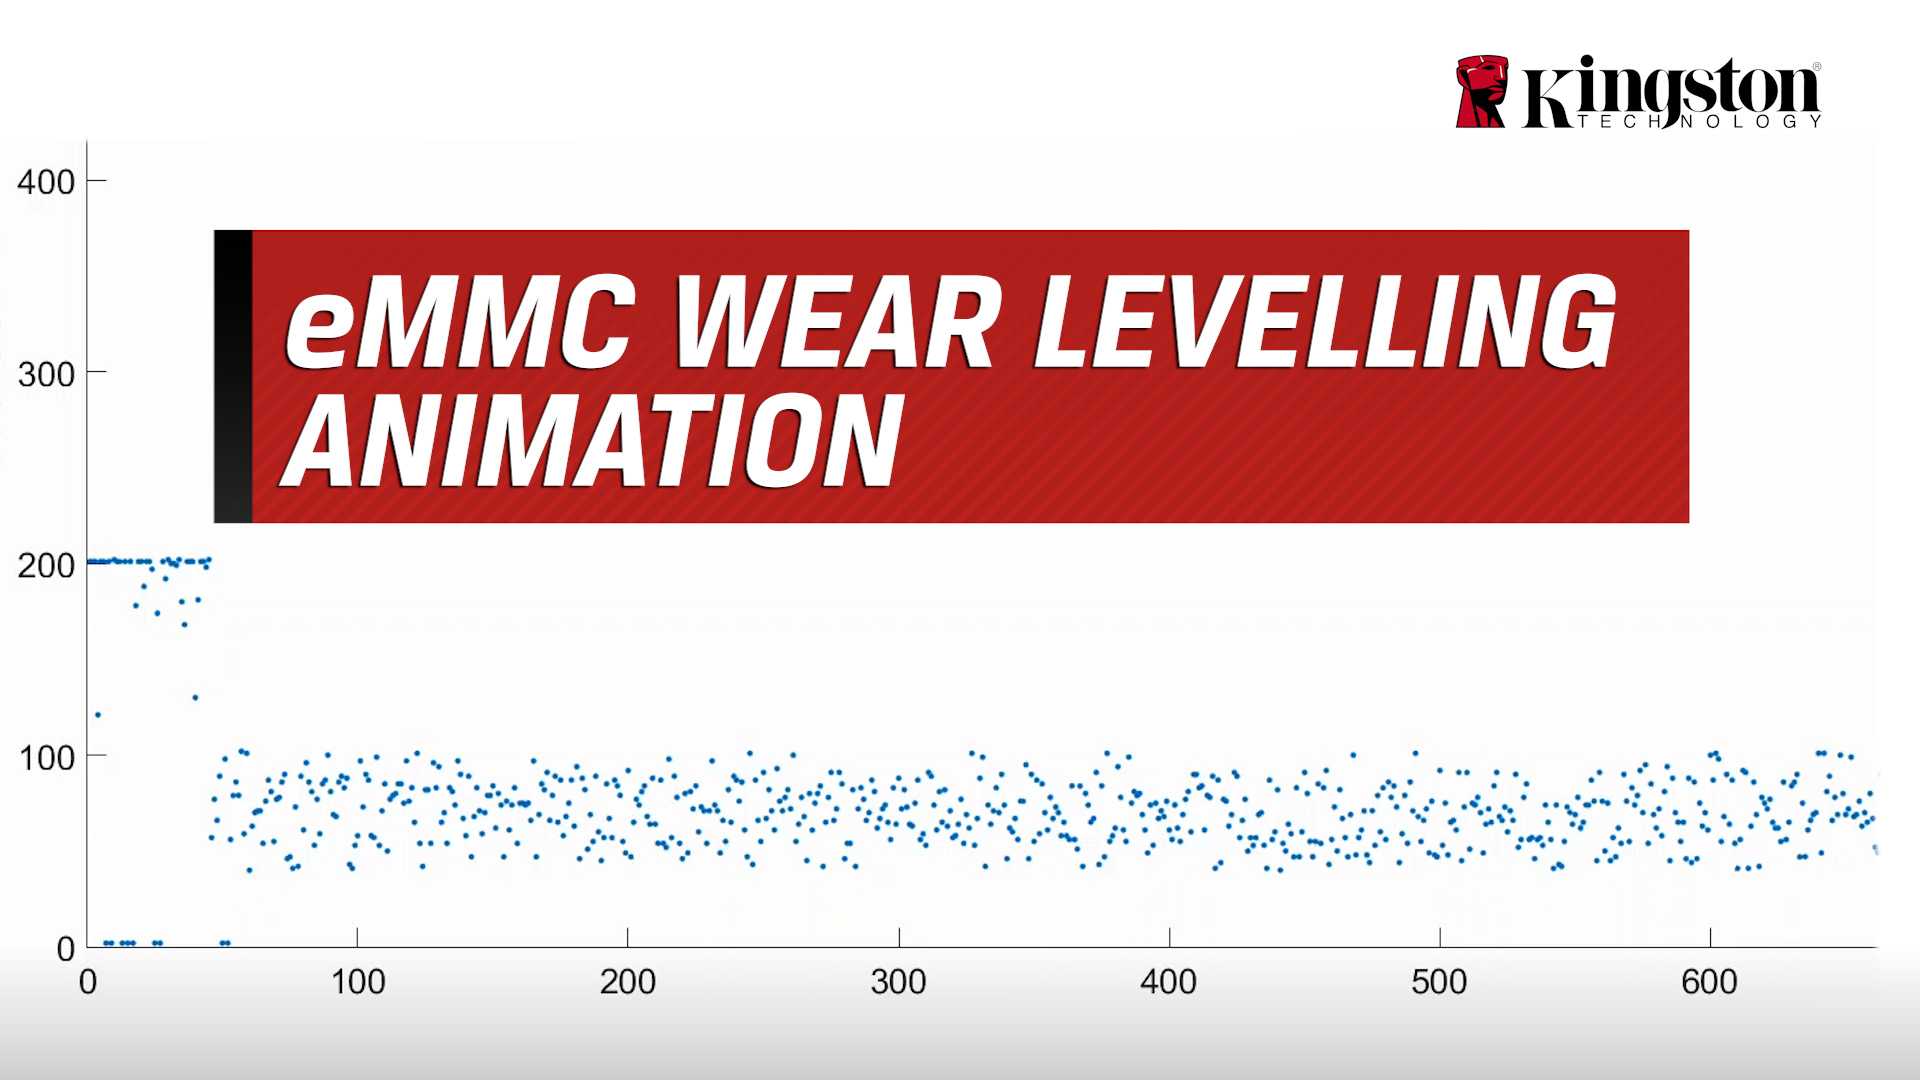 eMMC Wear Levelling Animation